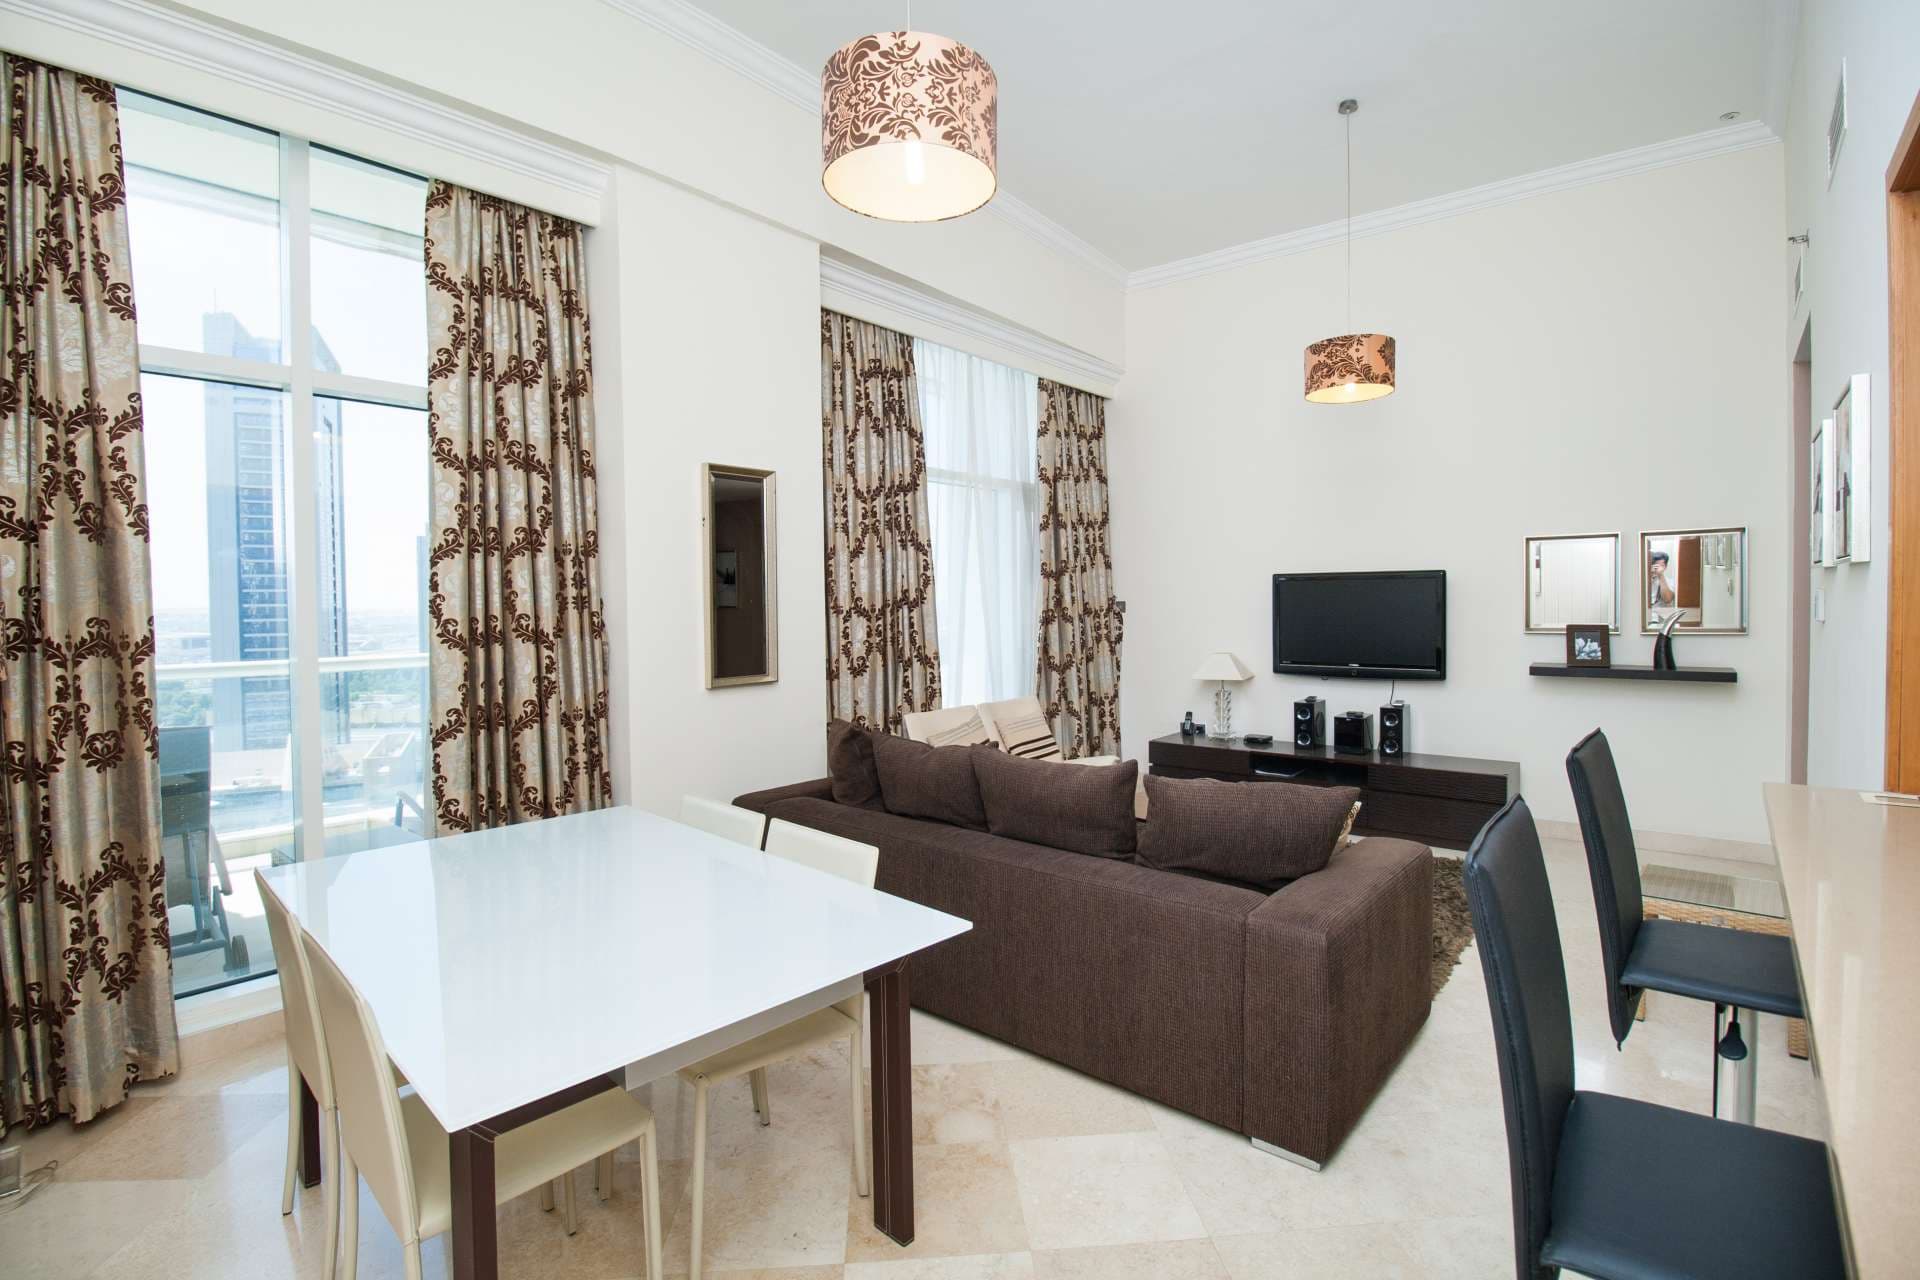 2 Bedroom Apartment For Rent Dorra Bay Lp04870 2afb98ffa6708400.jpg